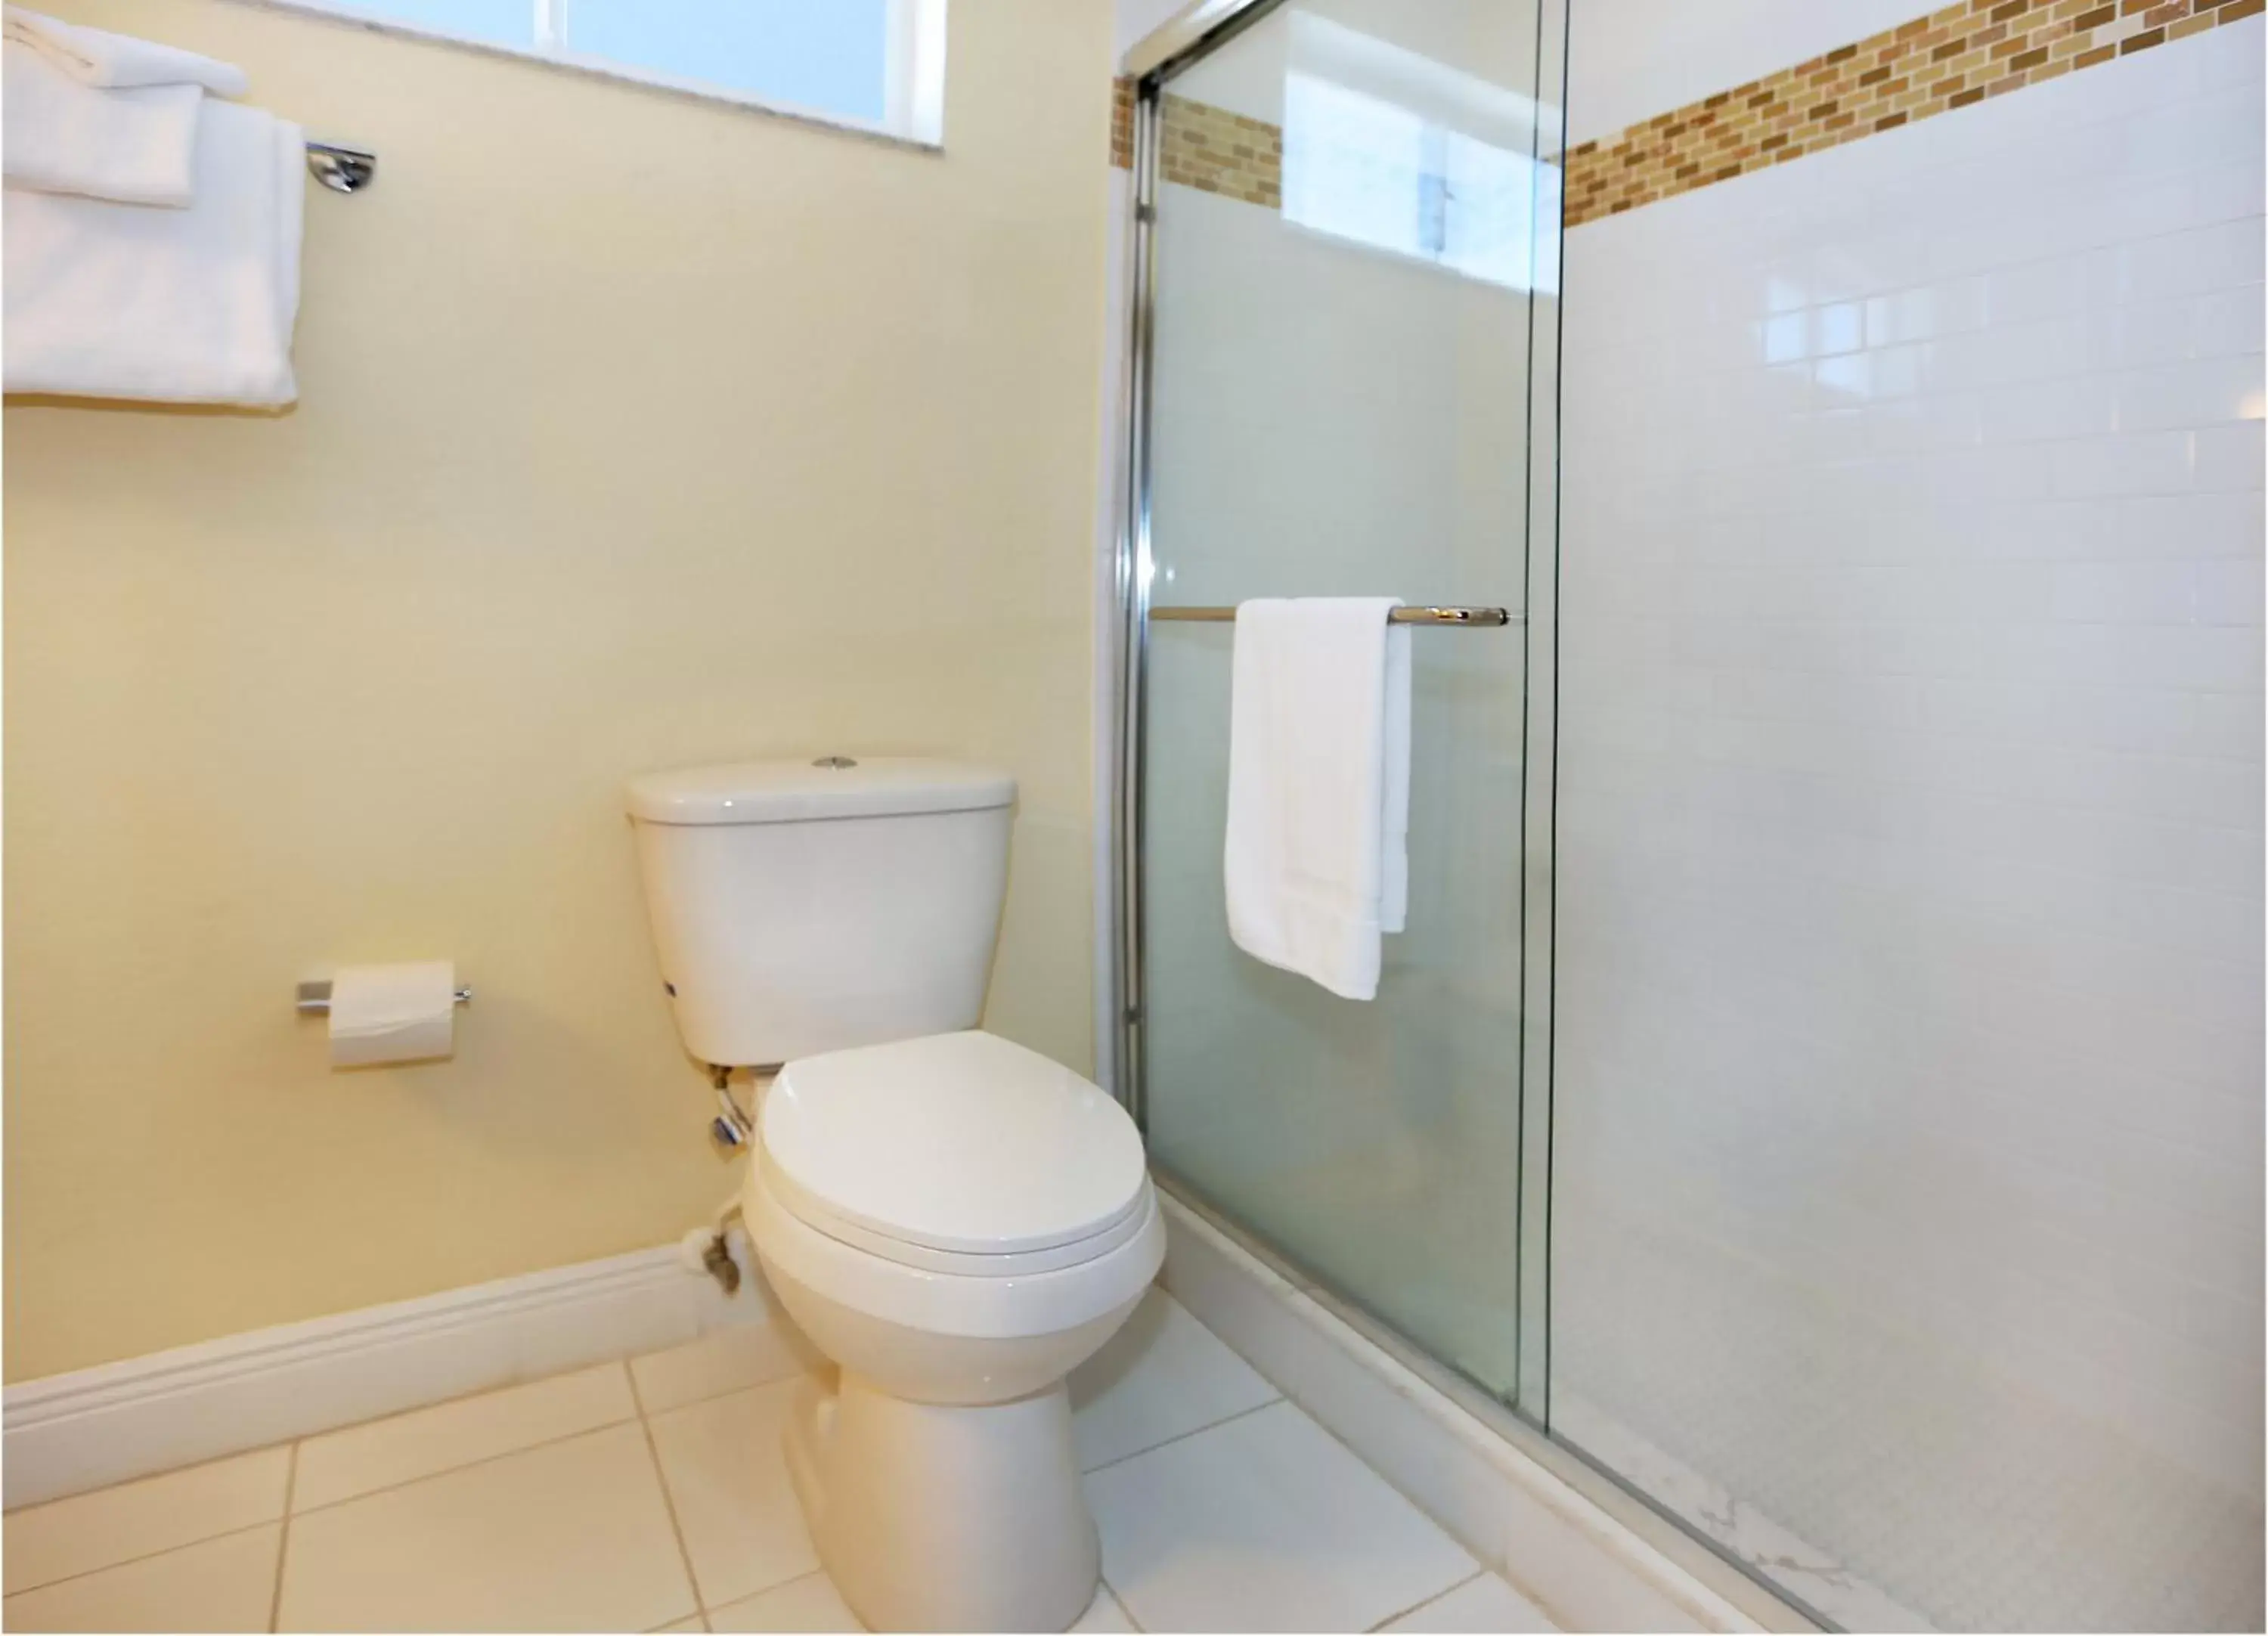 Toilet, Bathroom in Chateau Mar Beach Resort